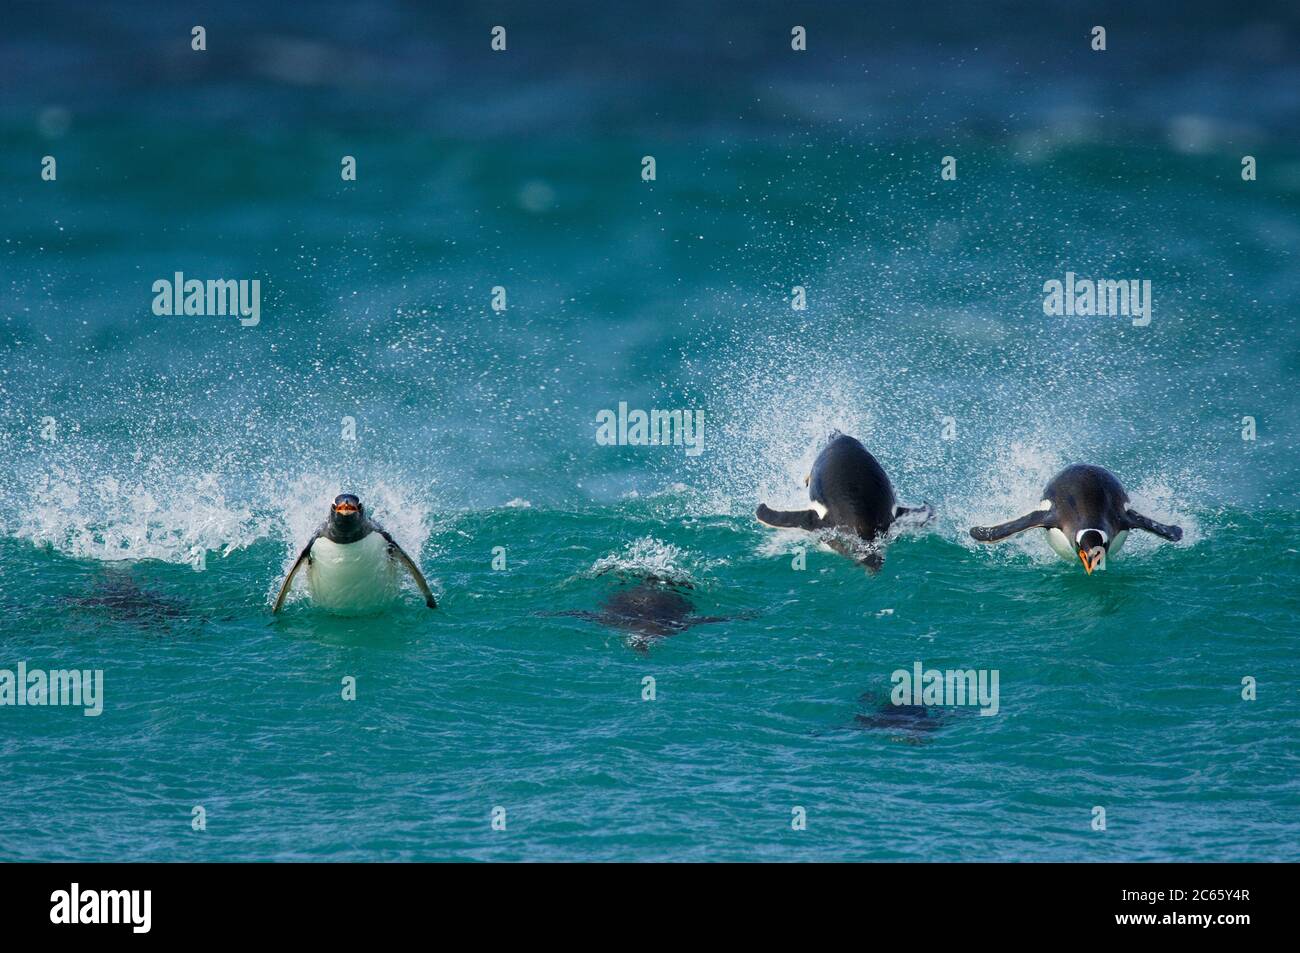 Mit einer Schwimmgeschwindigkeit von bis zu 30 km/h ist der Gentoo Penguin (Pygoscelis papua) die schnellste unter den Pinguinen. Porpoising ist eine sehr effiziente Art des Hochgeschwindigkeitsfahrens, da das Tier den geringeren Luftwiderstand als unter Wasser nutzt und mit offenem Schnabel atmen kann. [Größe des einzelnen Organismus: 75 cm] Stockfoto